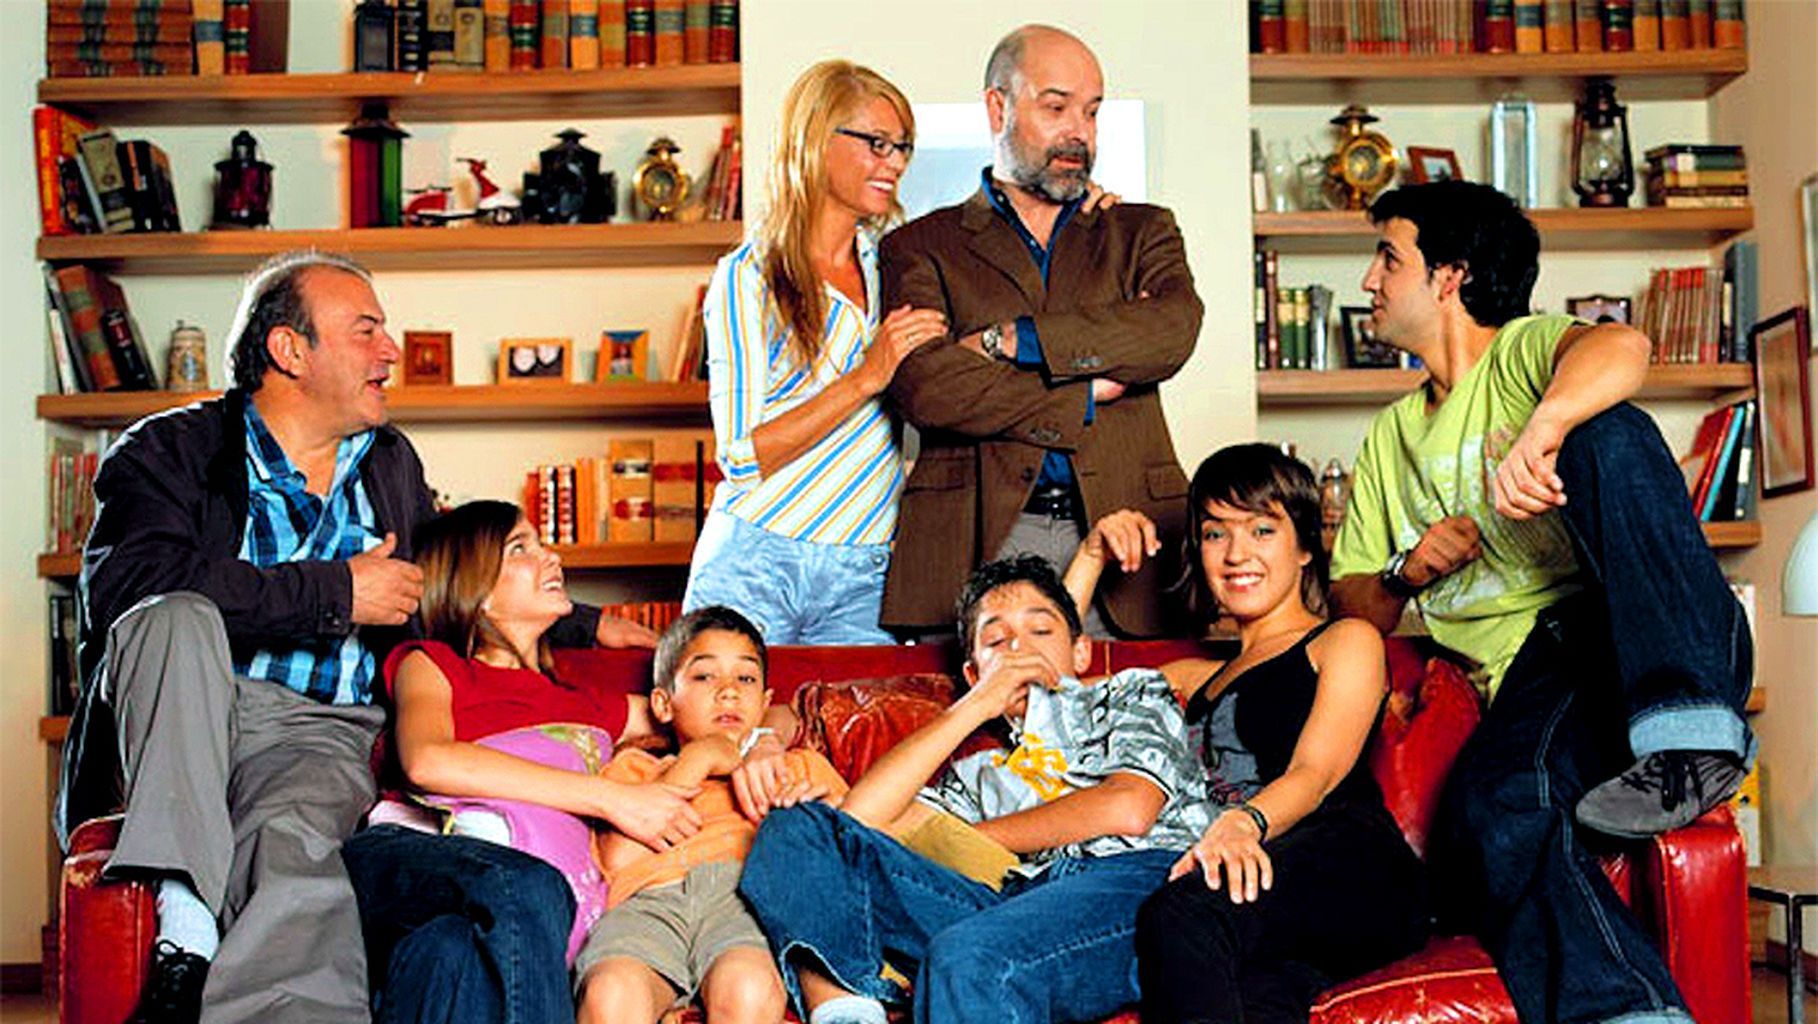 De estrella junto a Antonio Resines en ‘Los Serrano’ a contar ahora el lado oscuro de salir en televisión